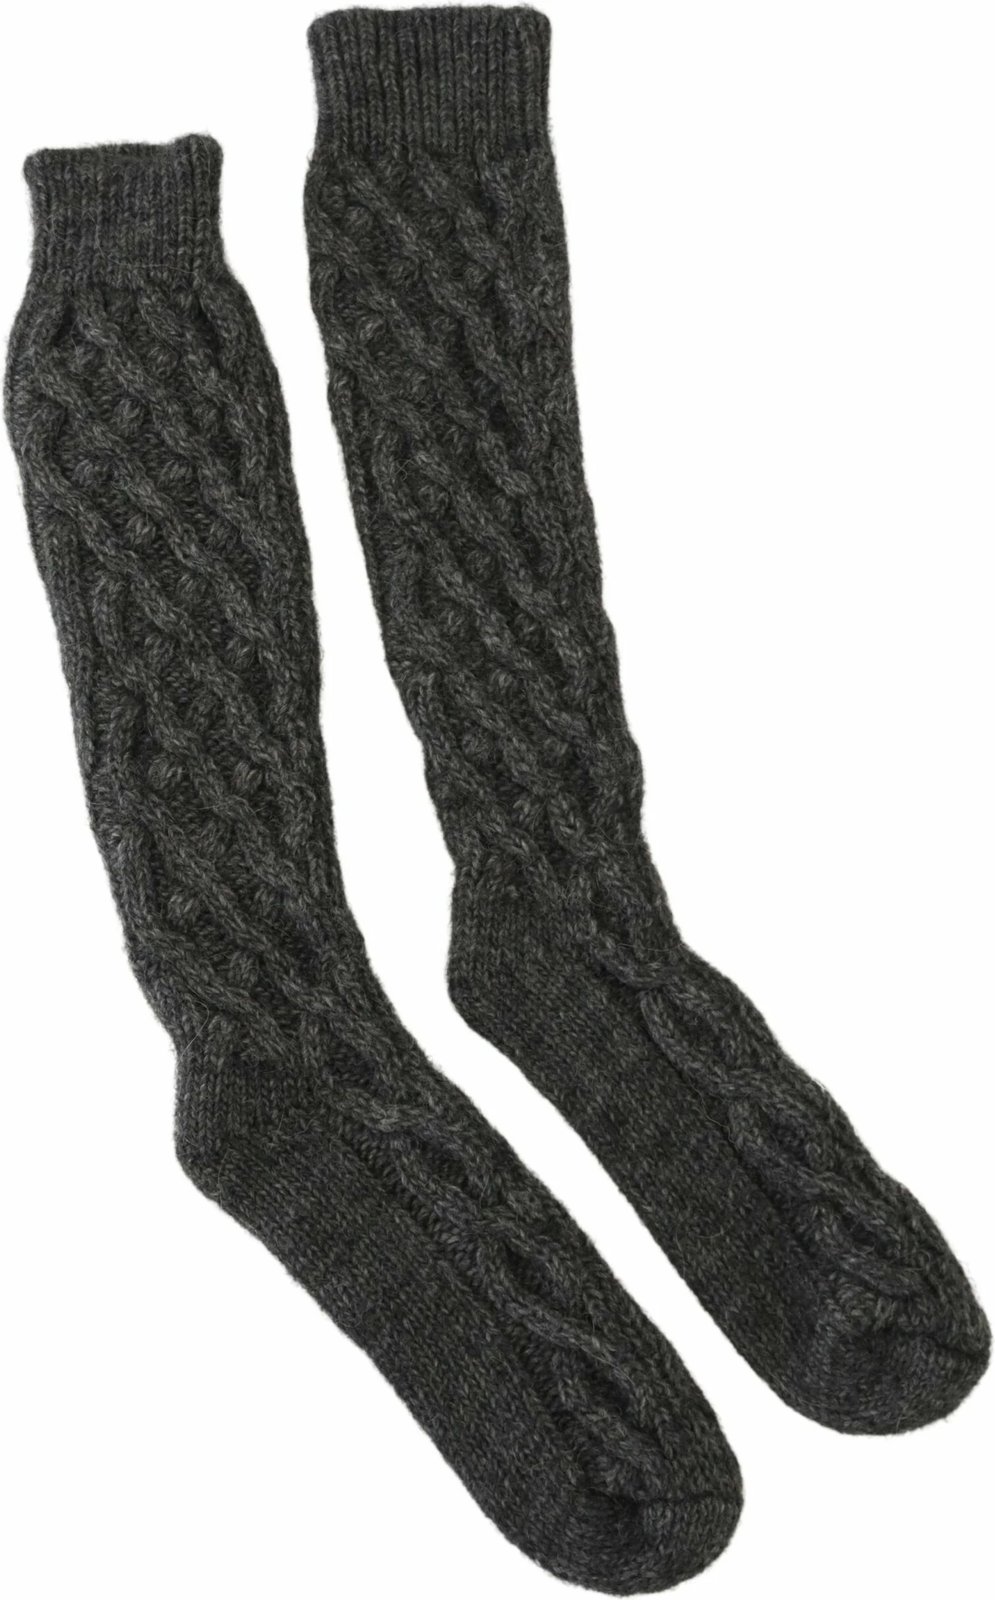 Çorape për femra Dolce & Gabbana, hiri